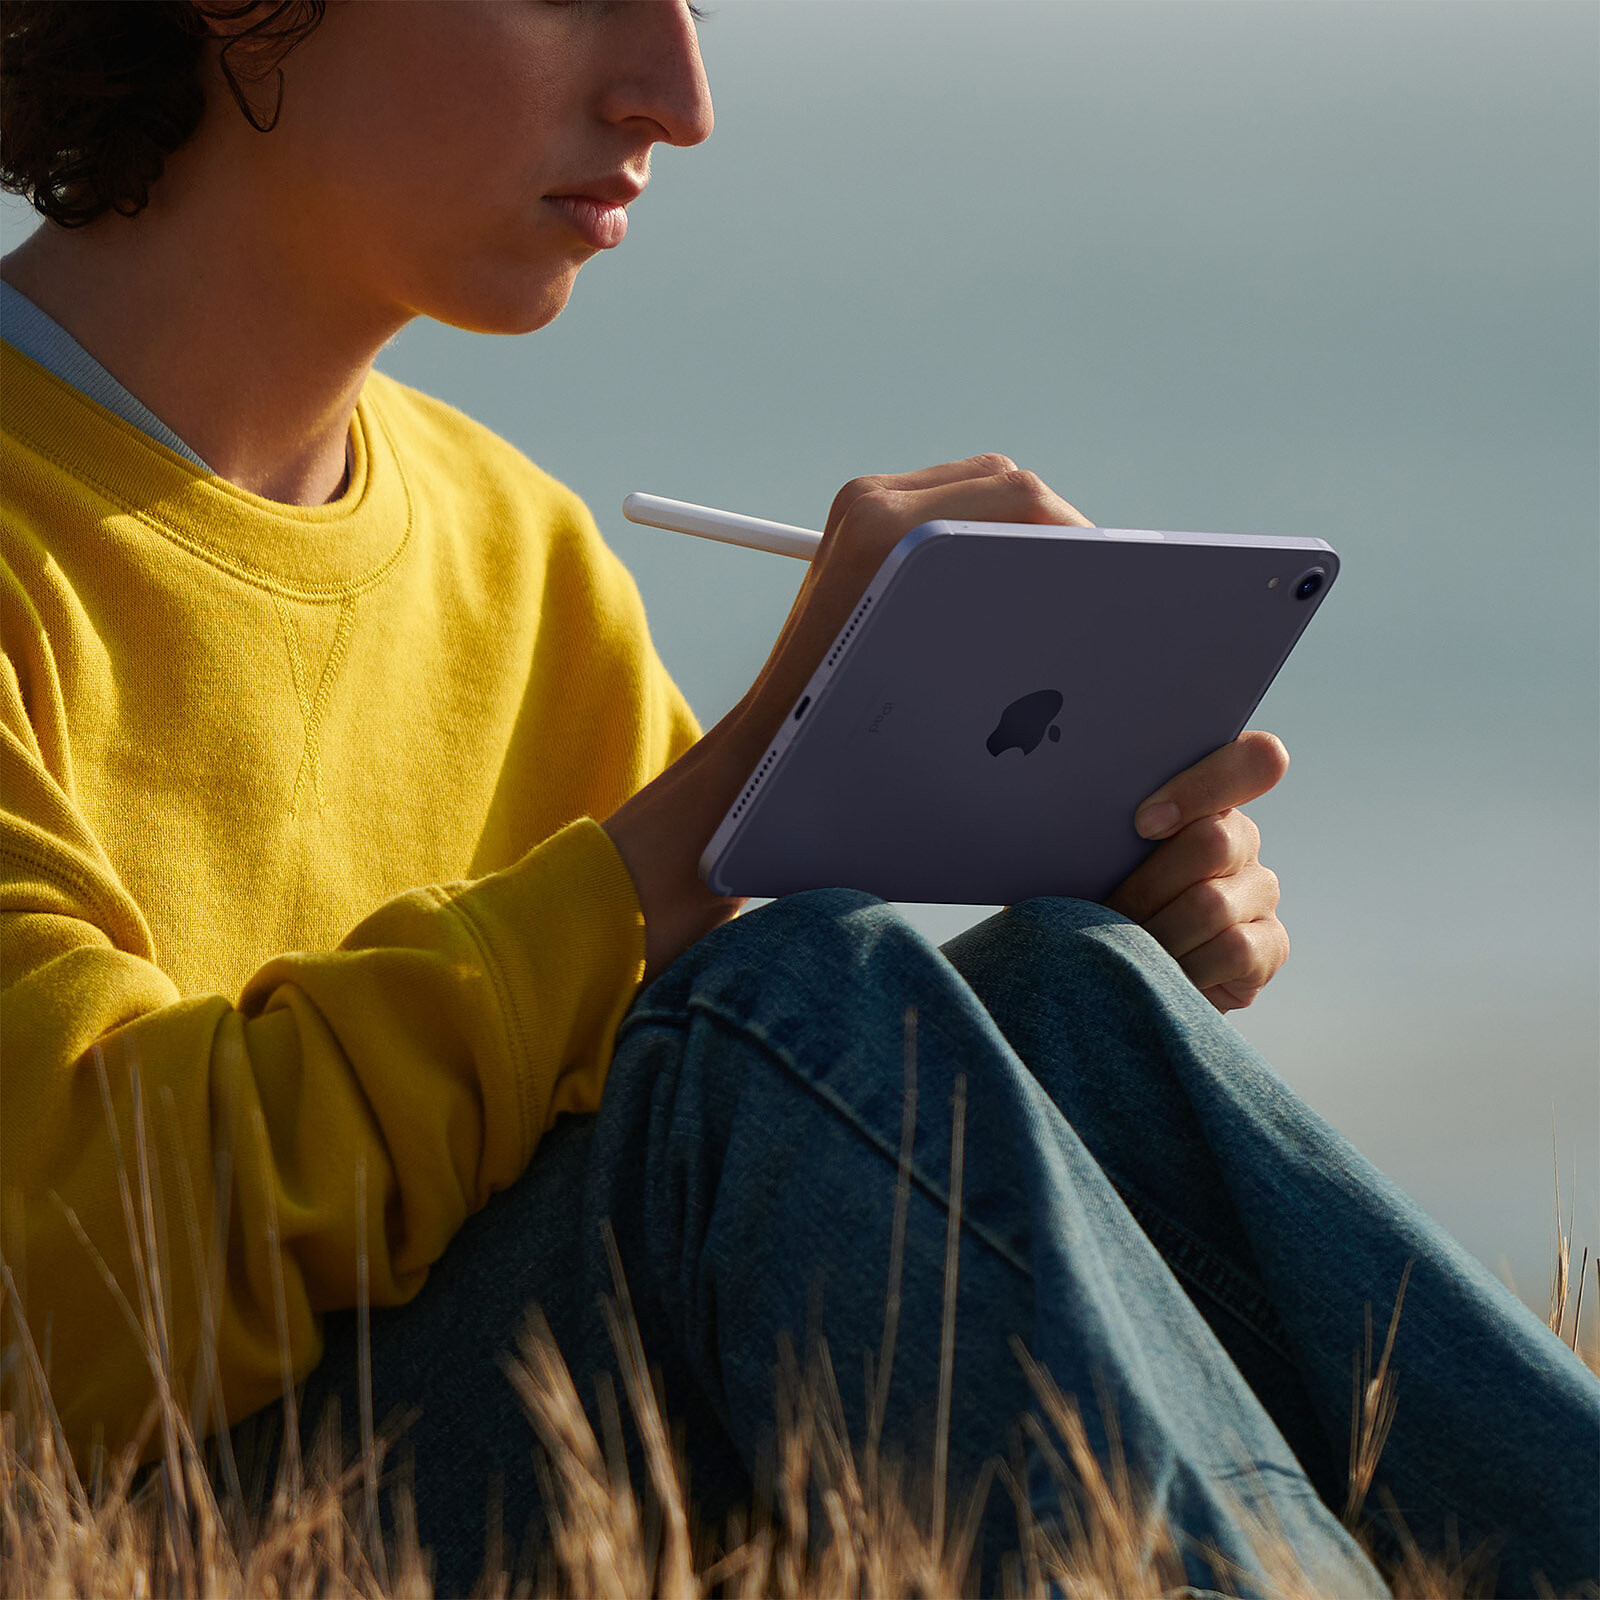 Apple iPad Pro (2018) 11 pouces 512 Go Wi-Fi + Cellular Gris Sidéral -  Tablette tactile - Garantie 3 ans LDLC